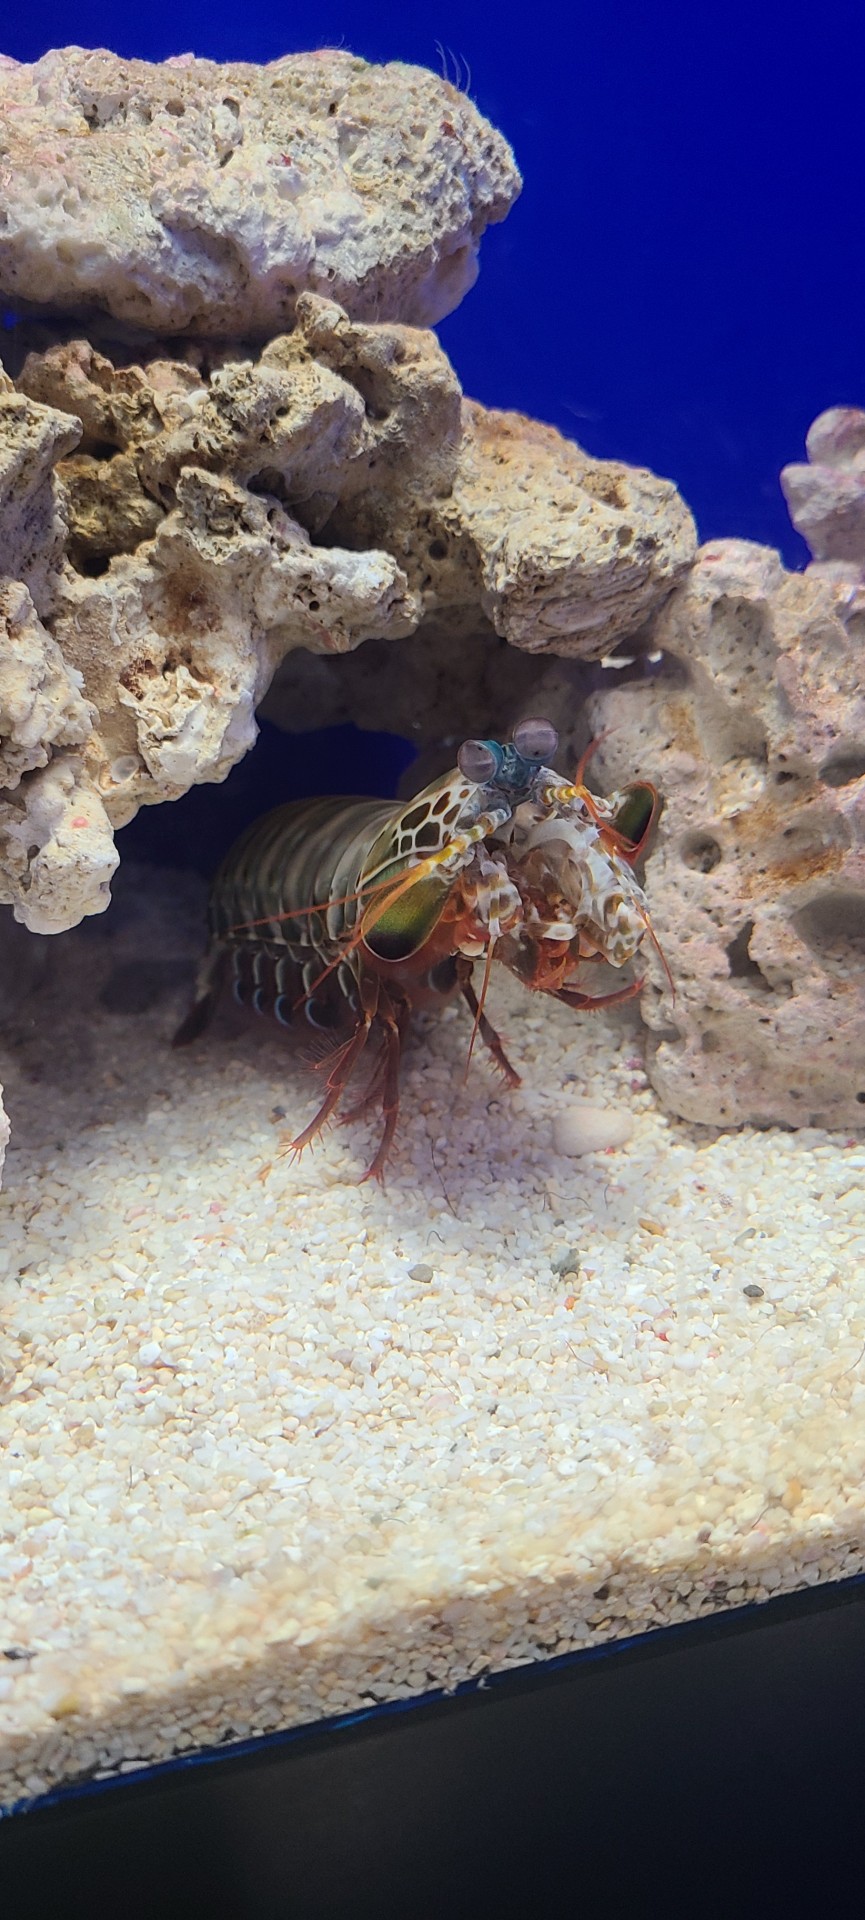 Porn photo shrimp-propaganda:mantis shrimp mantis shrimp